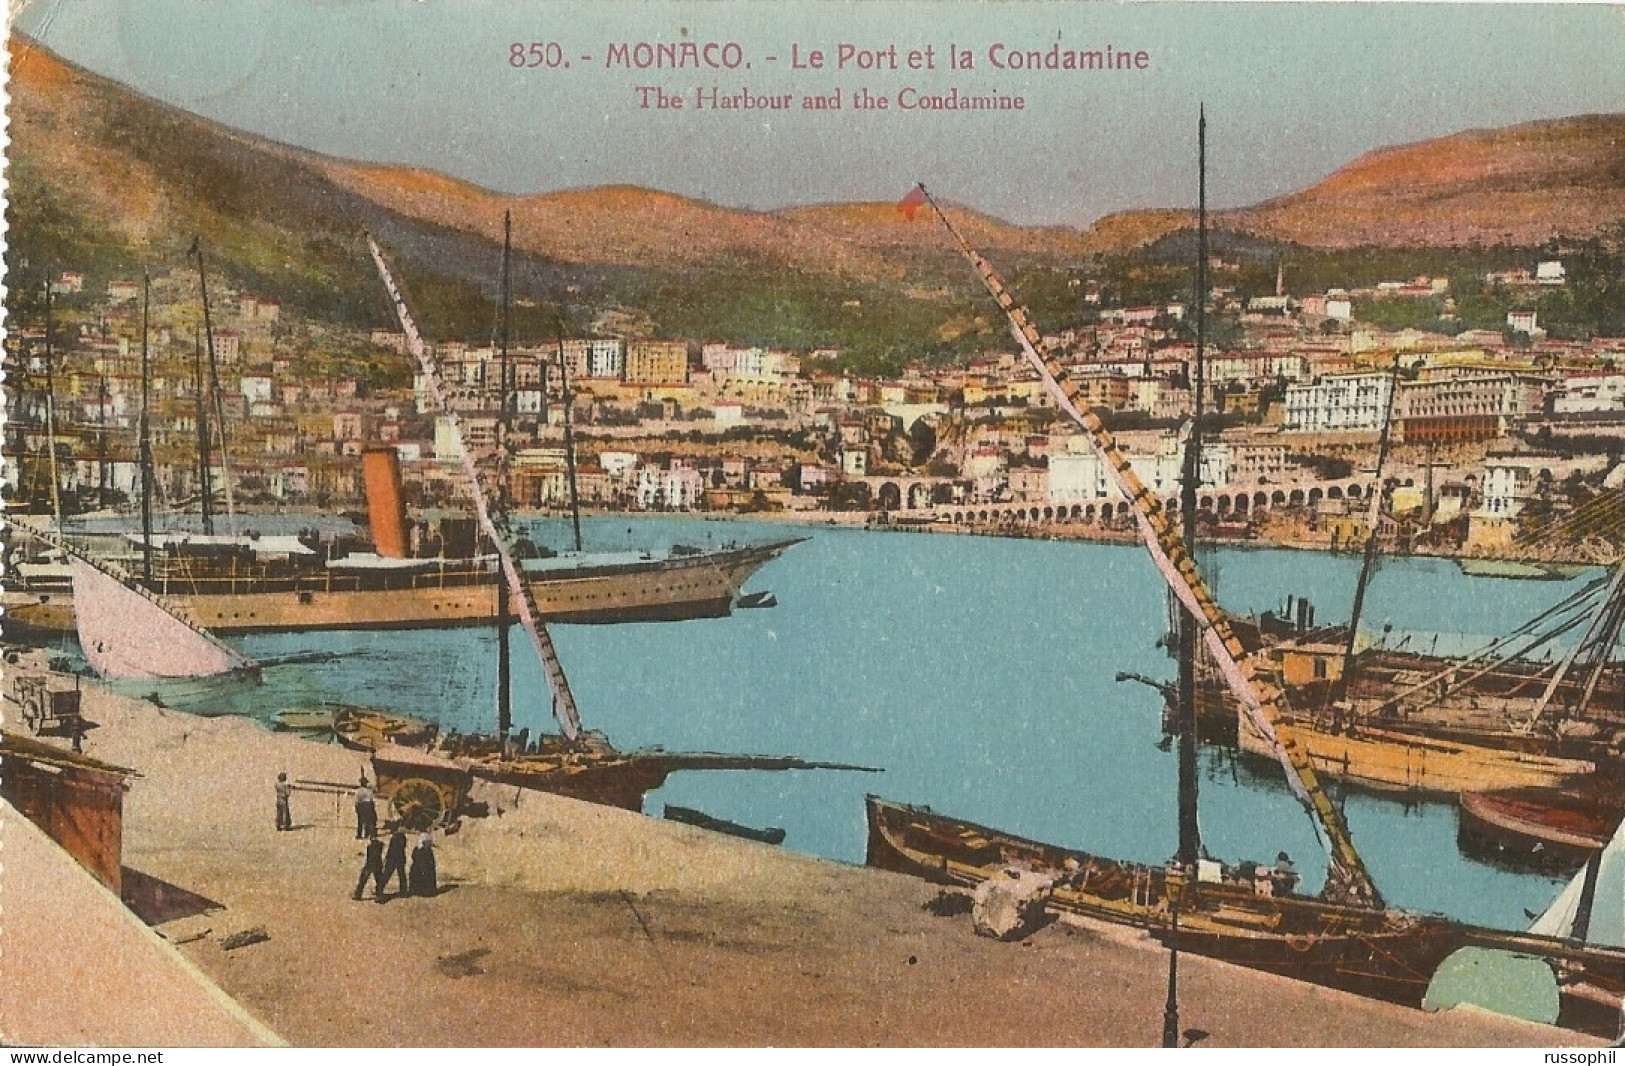 MONACO - LE PORT ET LA CONDAMINE - THE HARBOUR AND THE CONDAMINE - ED. GILETTA REF #850 - 1925 - Hafen